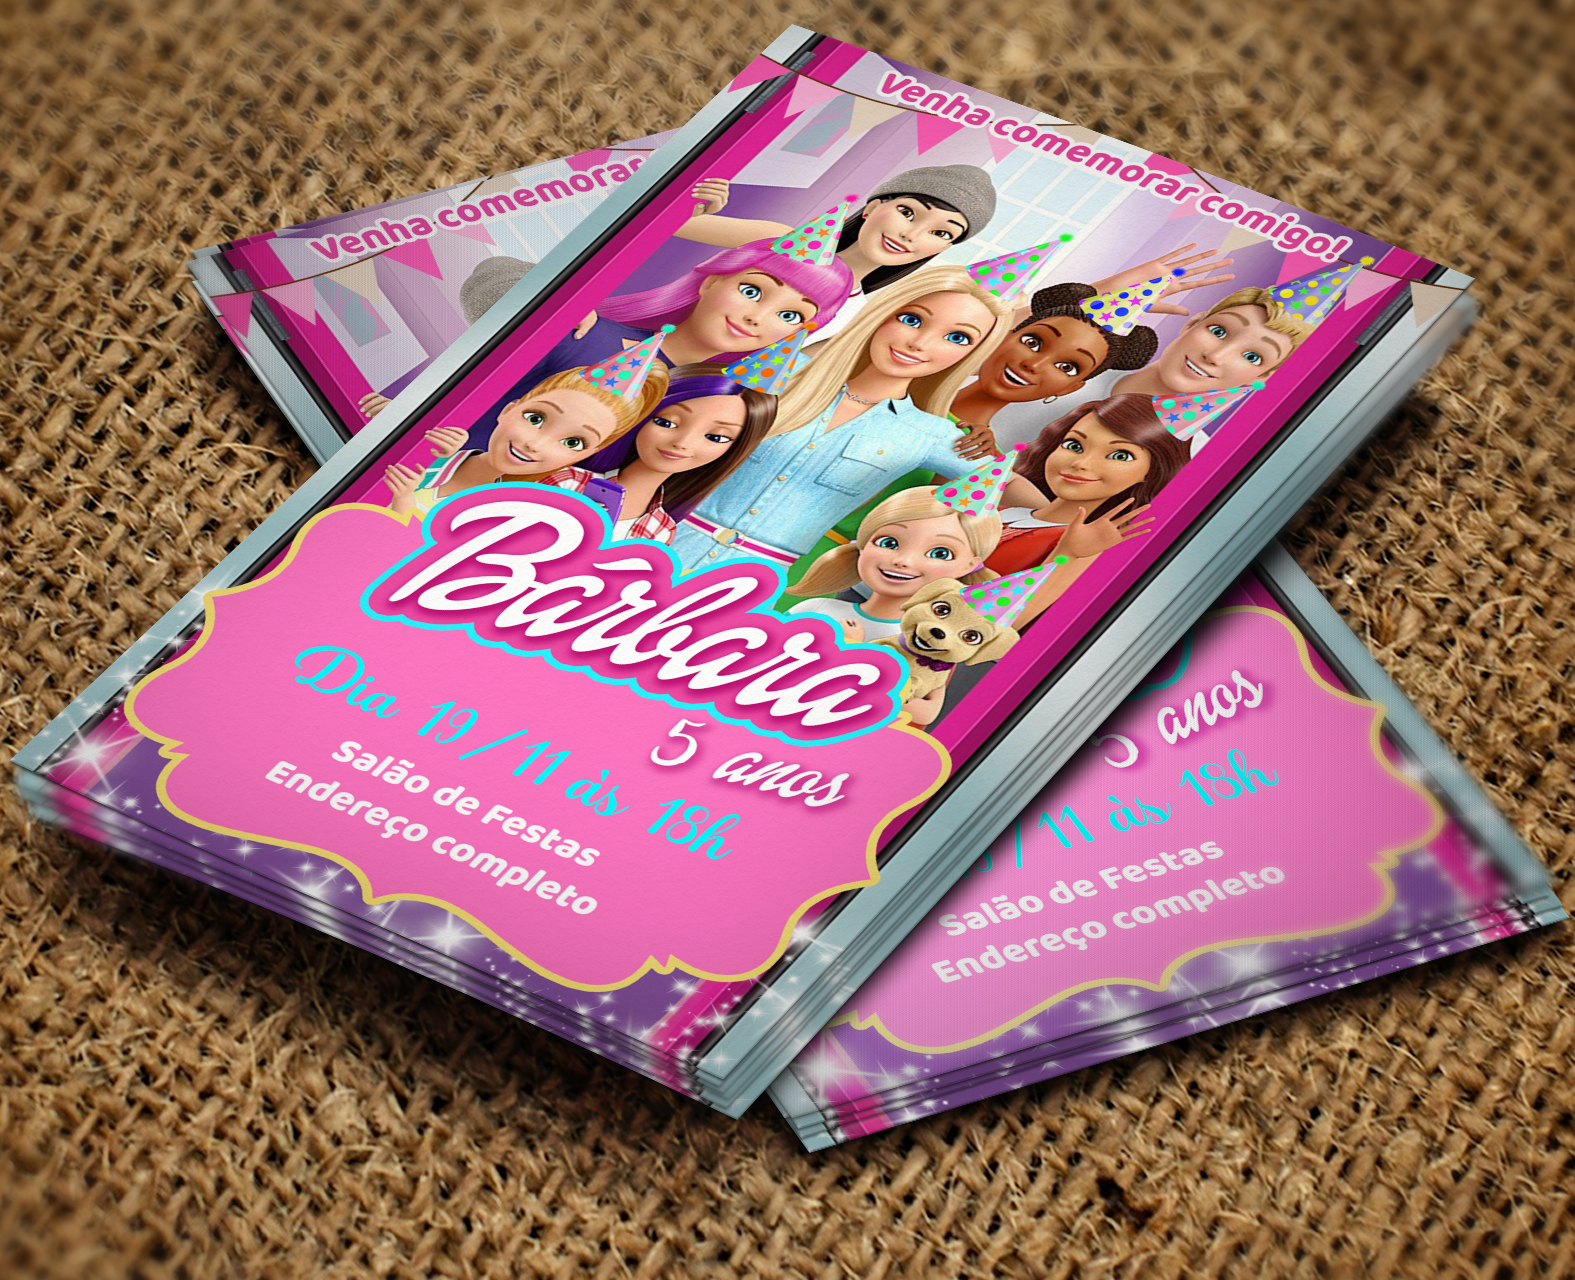 Convite barbie